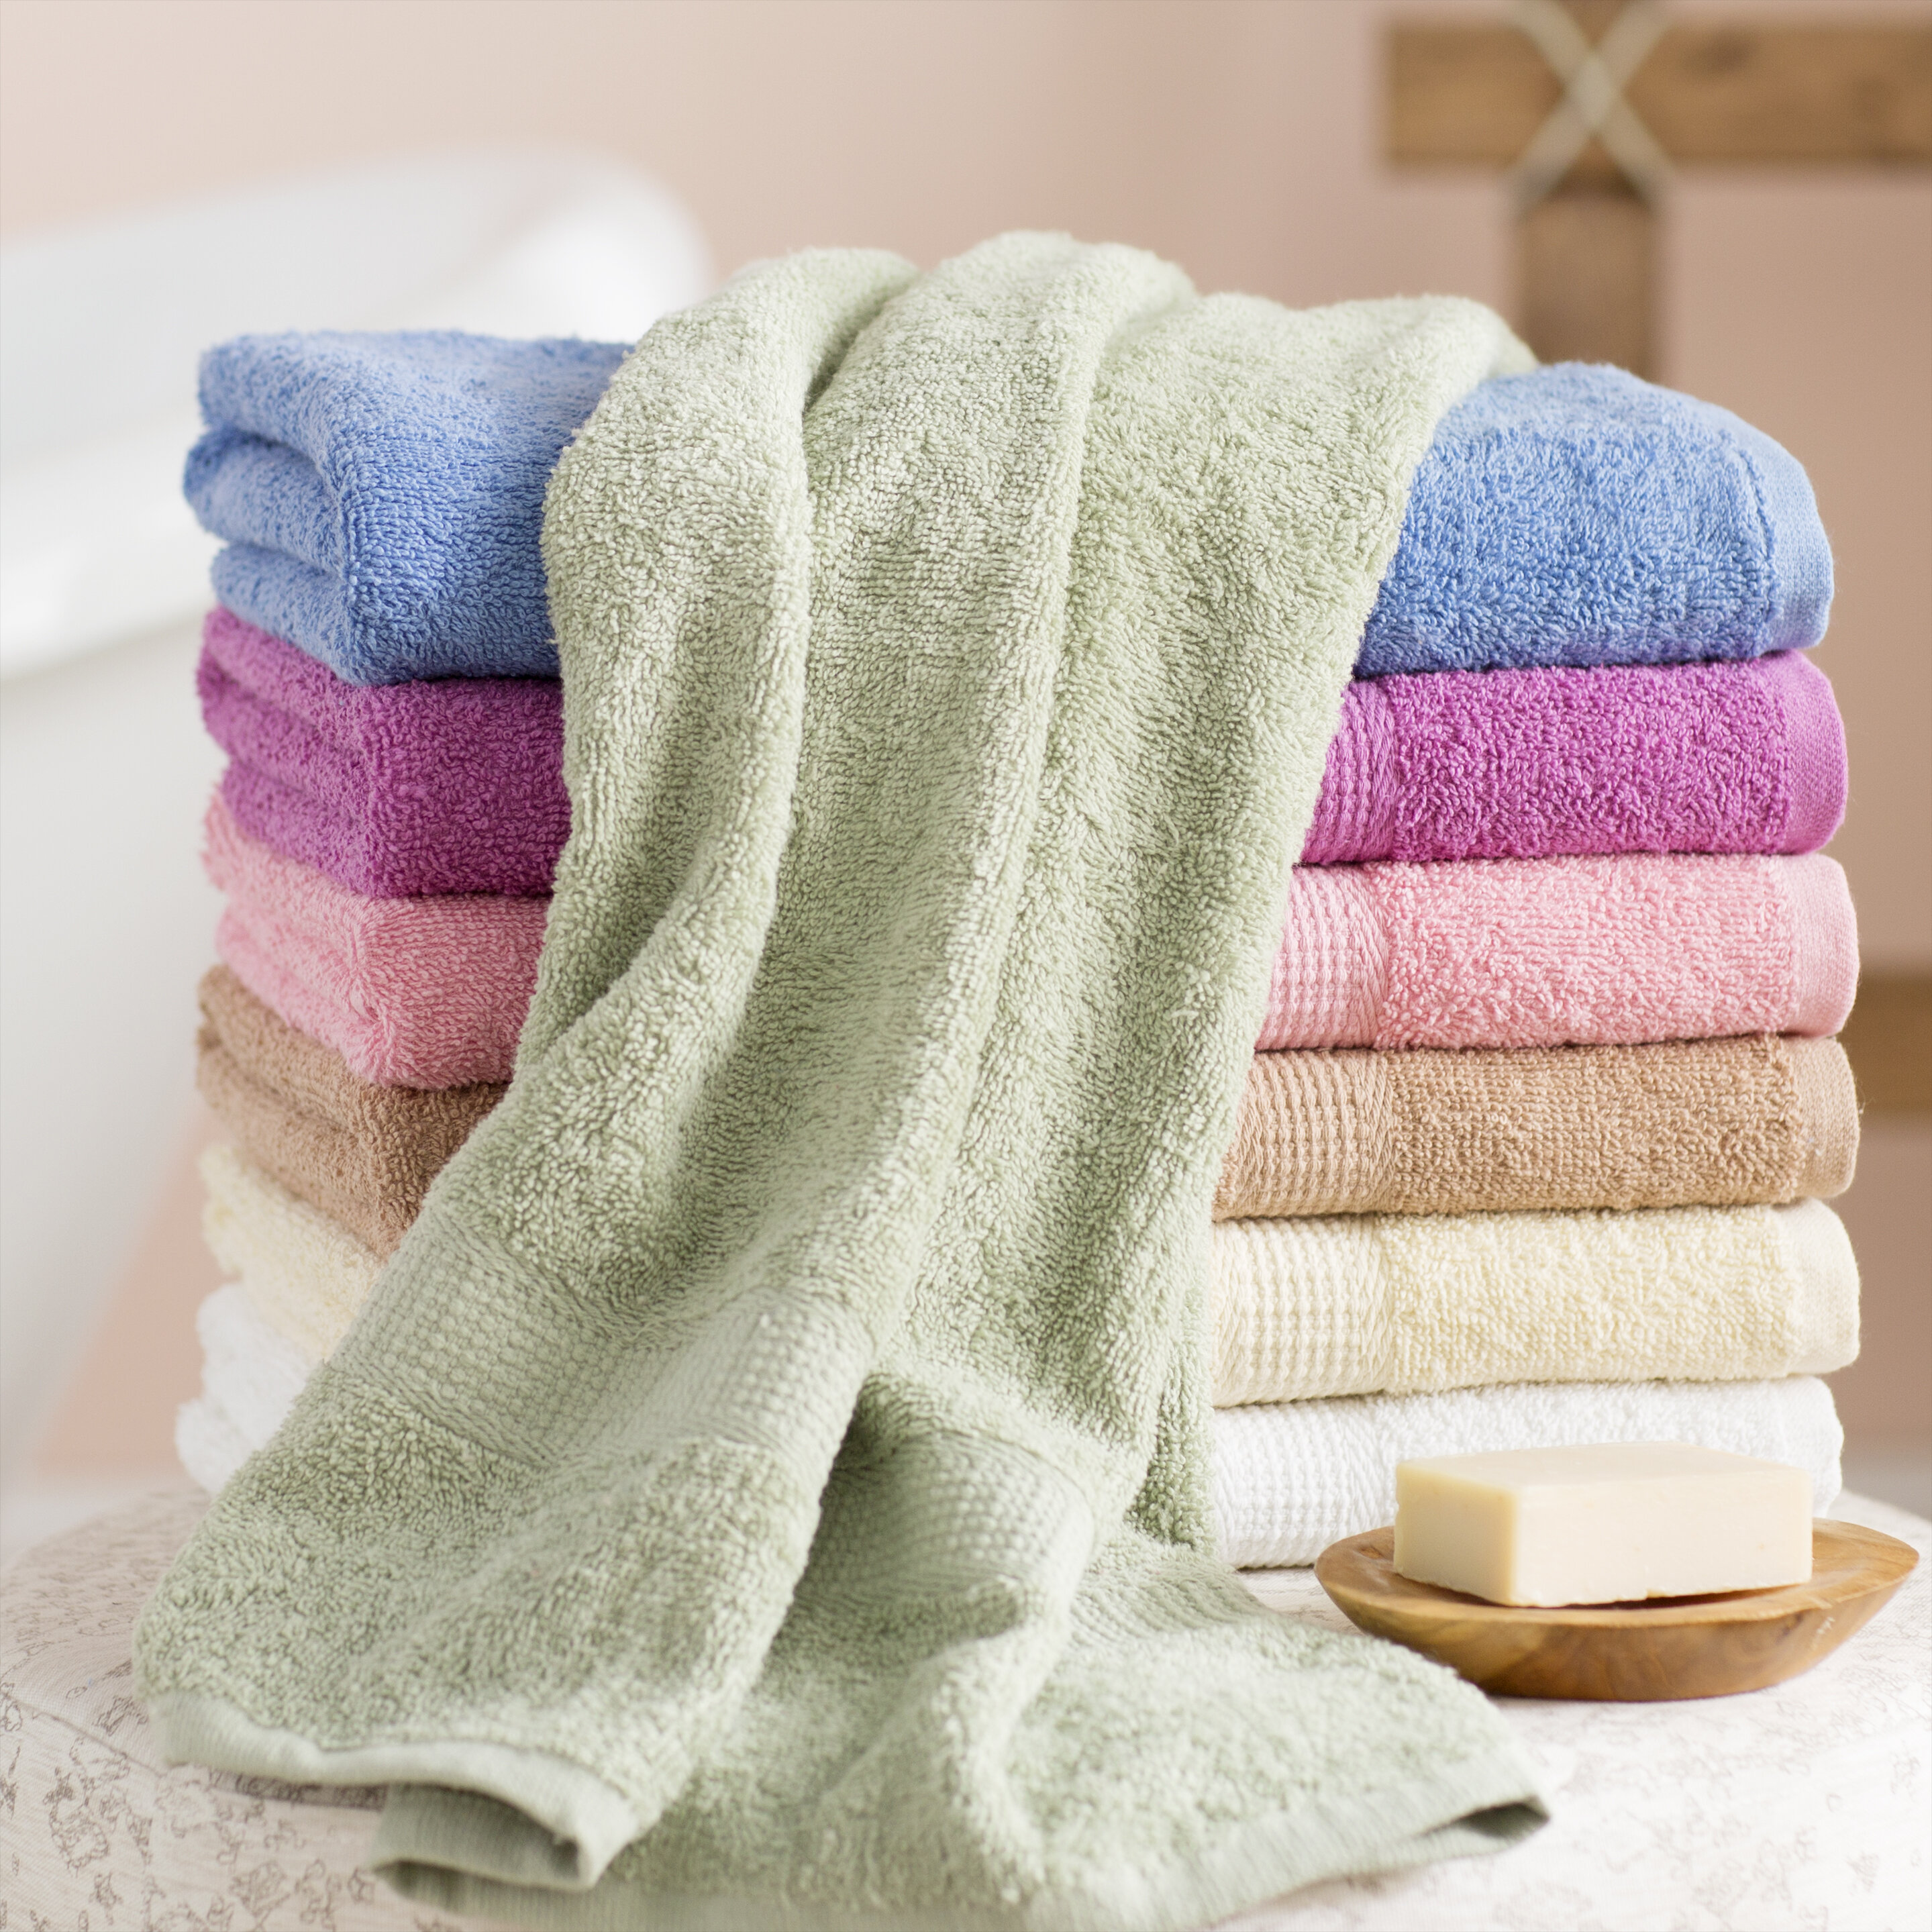 Details about   JW_ 4Pcs/Set Premium Cotton Bath Towels Ultra Plush Soft Absorbent Large Bath 